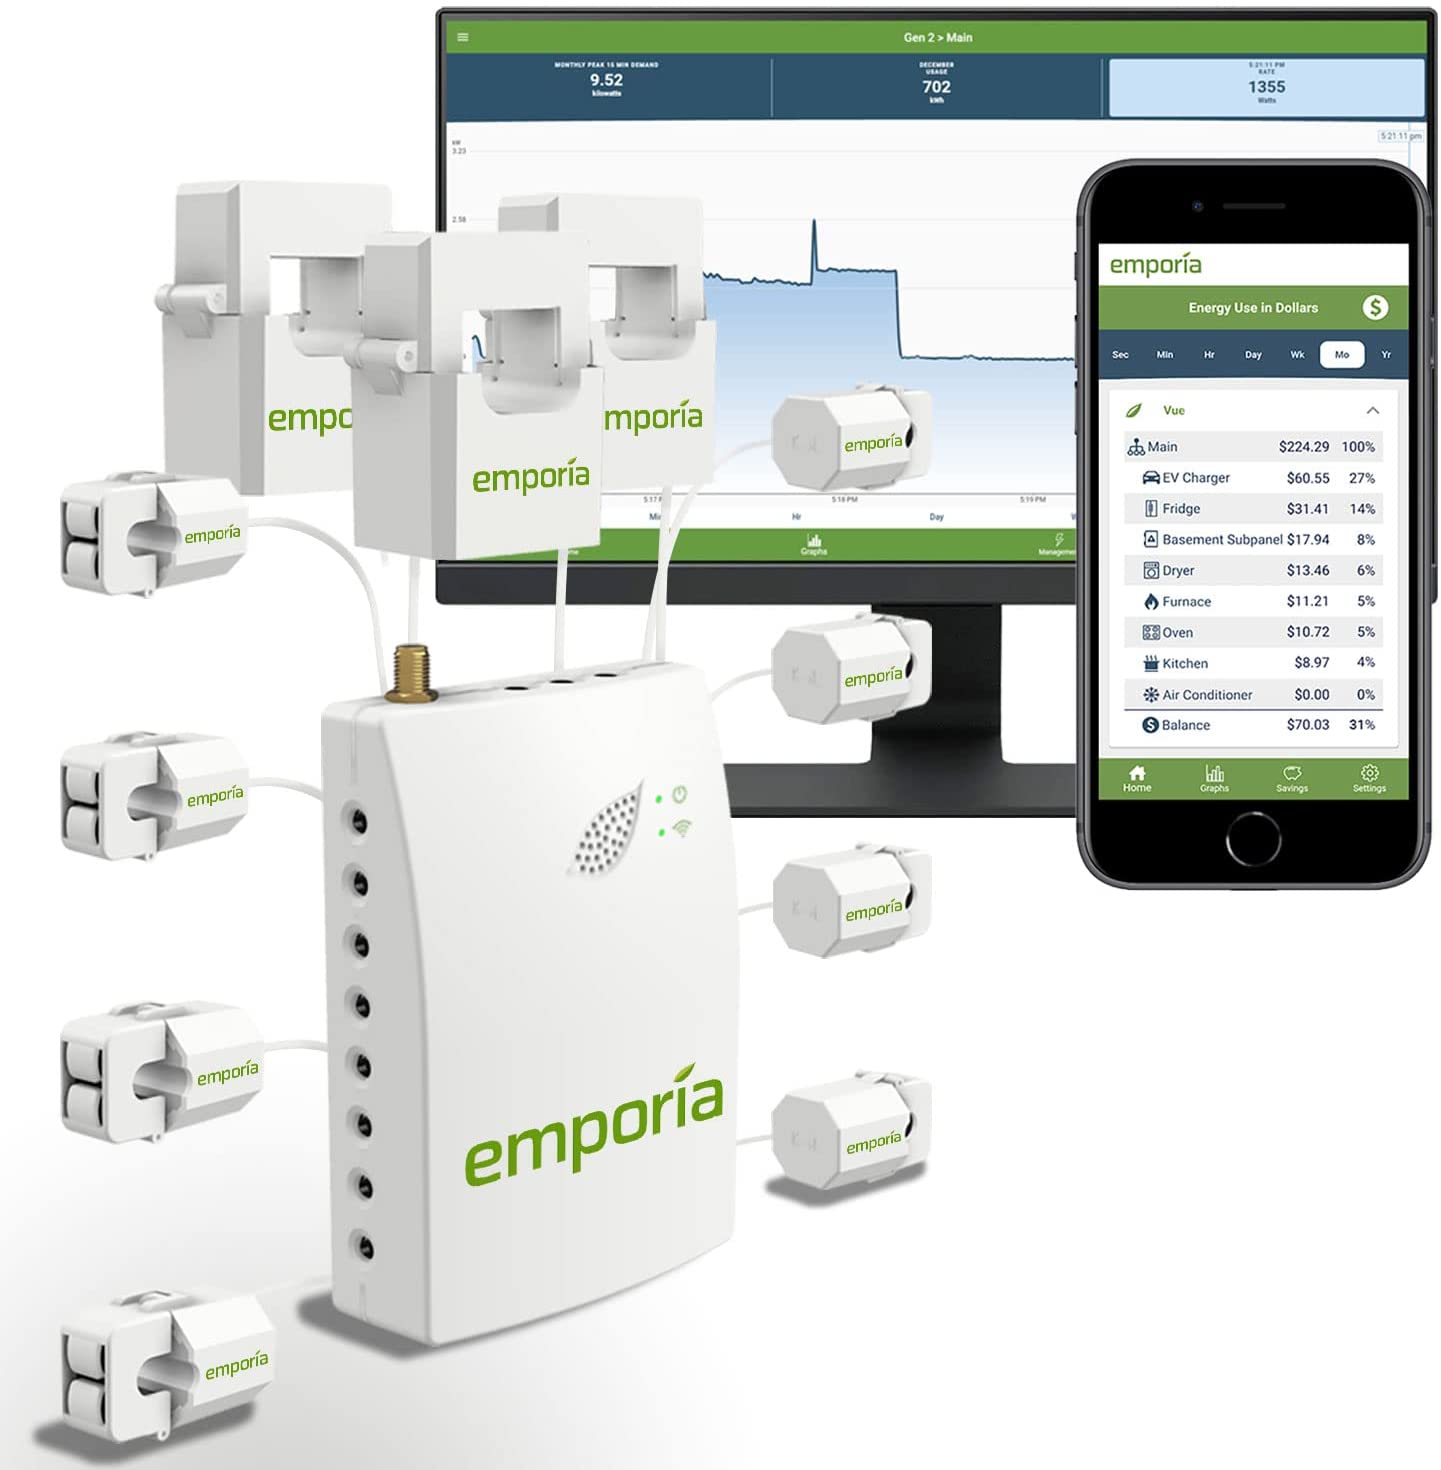 Emporia A001 Smart Home Energy Monitor